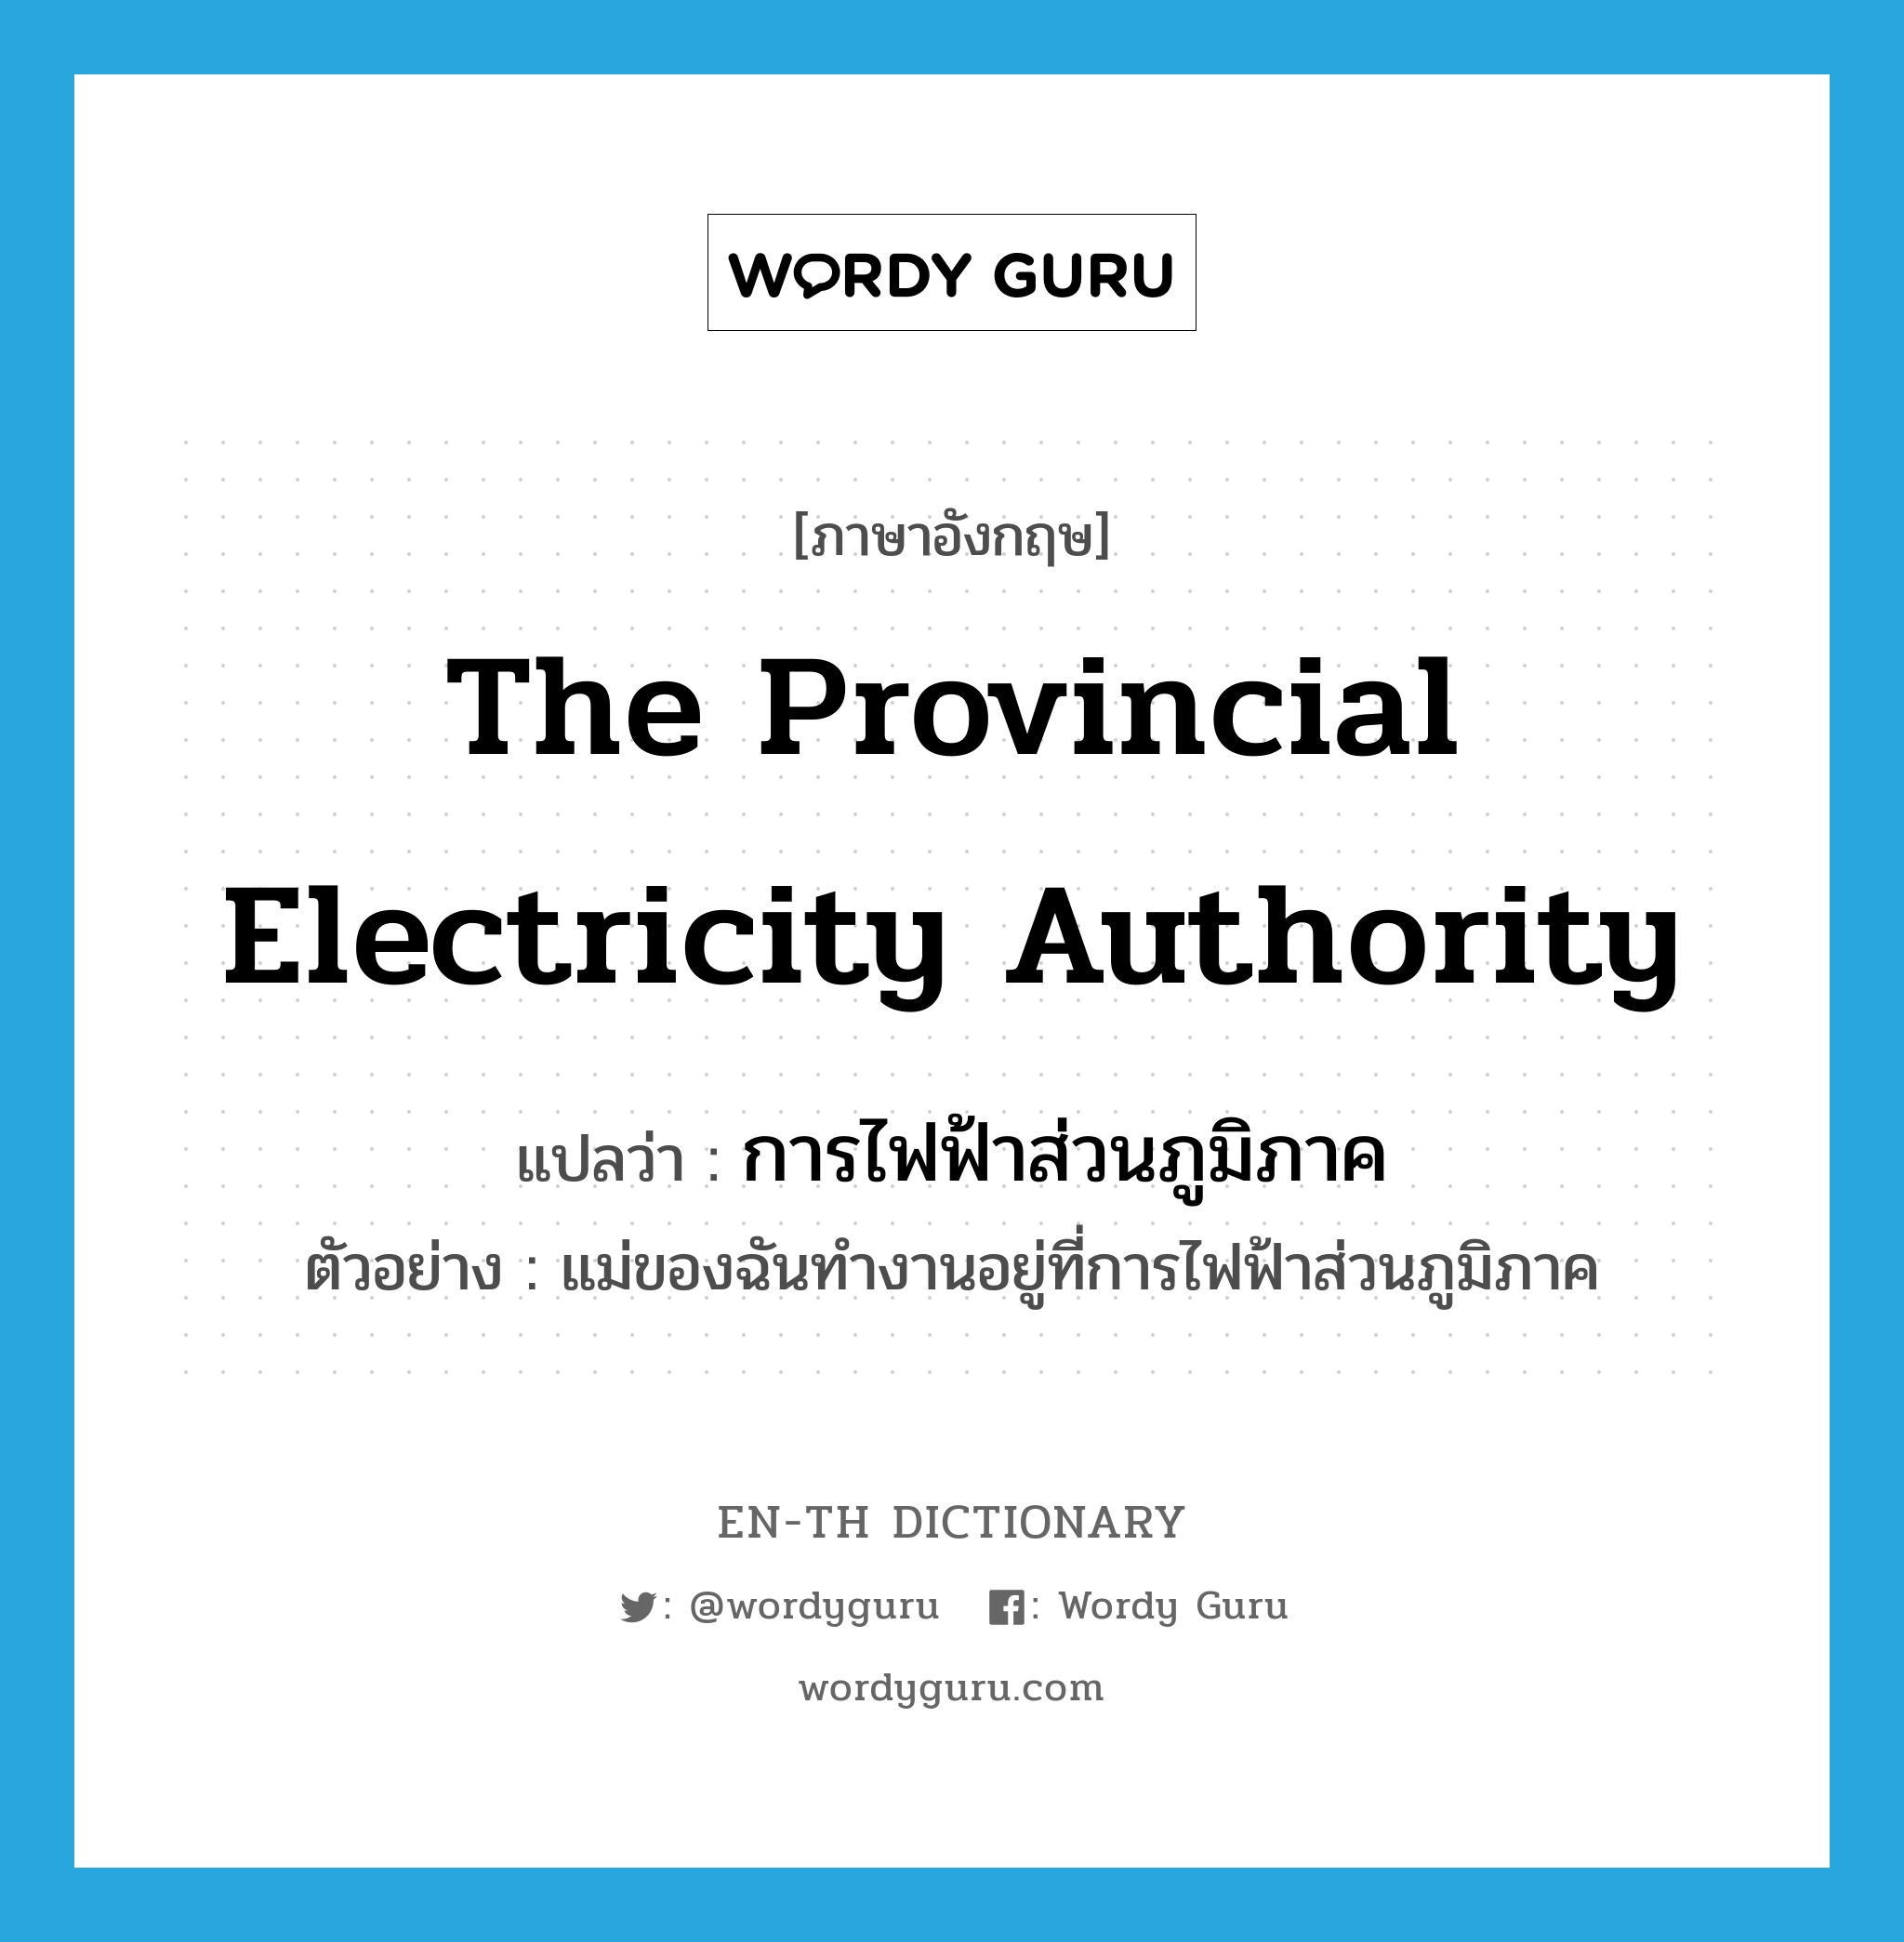 การไฟฟ้าส่วนภูมิภาค ภาษาอังกฤษ?, คำศัพท์ภาษาอังกฤษ การไฟฟ้าส่วนภูมิภาค แปลว่า The Provincial Electricity Authority ประเภท N ตัวอย่าง แม่ของฉันทำงานอยู่ที่การไฟฟ้าส่วนภูมิภาค หมวด N